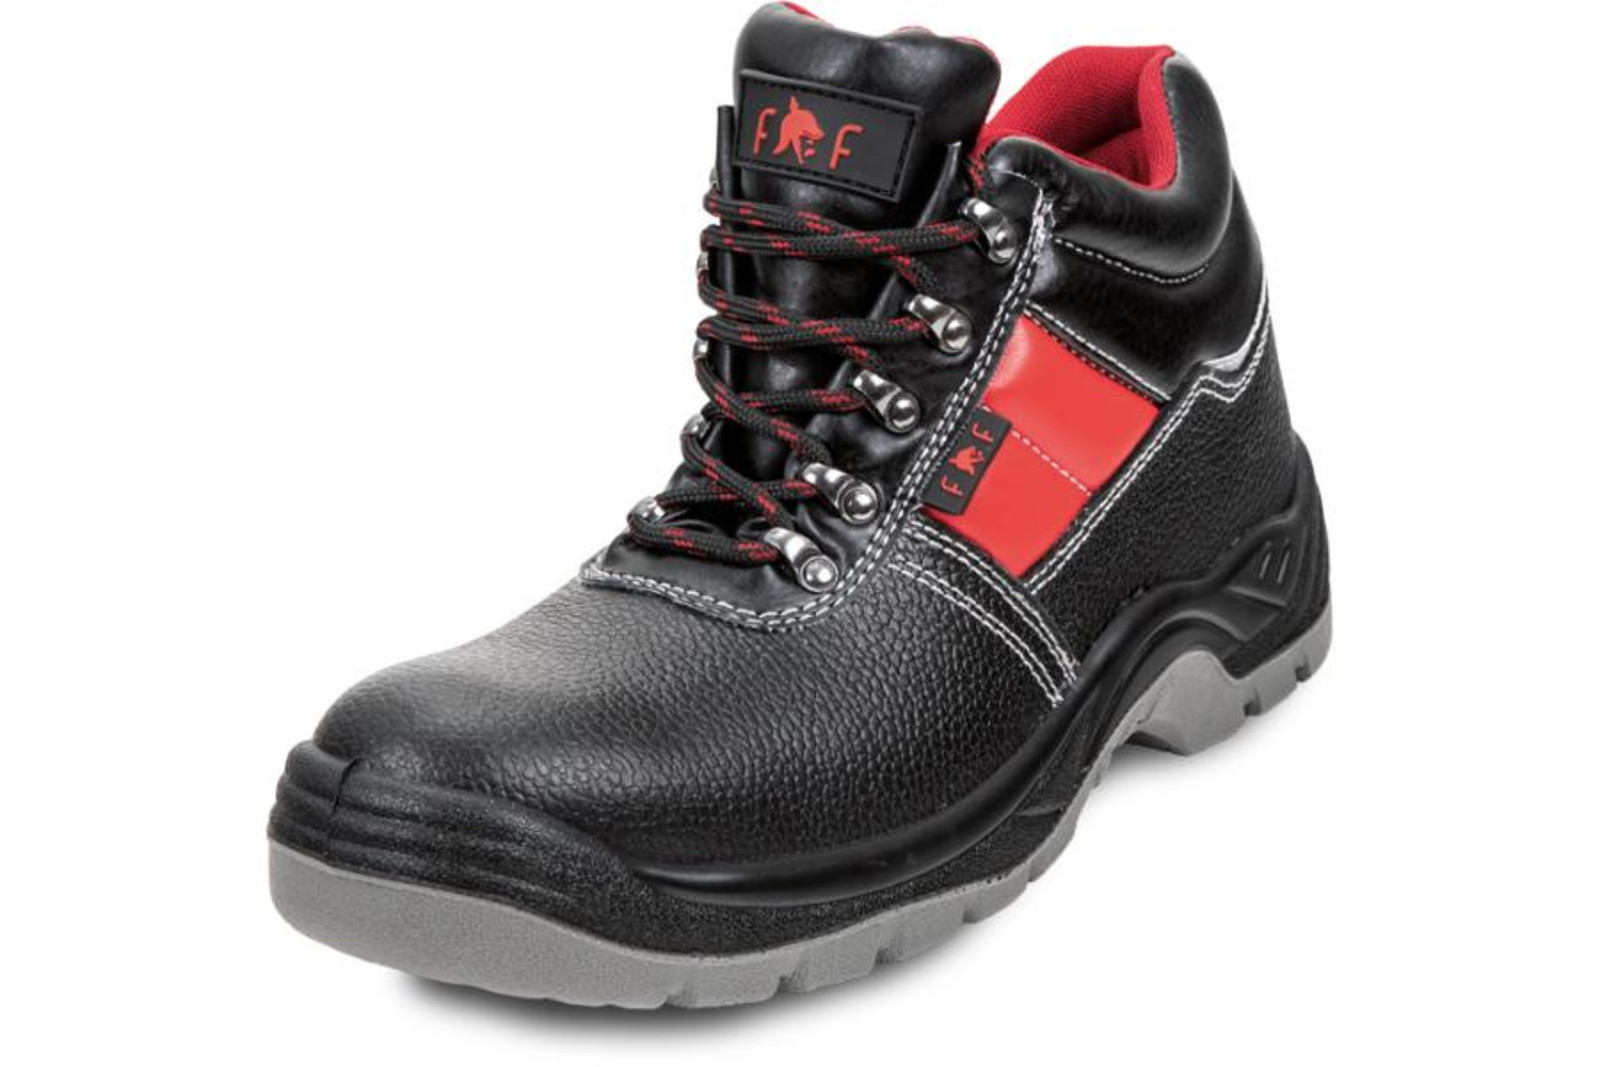 Bezpečnostná obuv SC 03-003 S3 - veľkosť: 36, farba: čierna